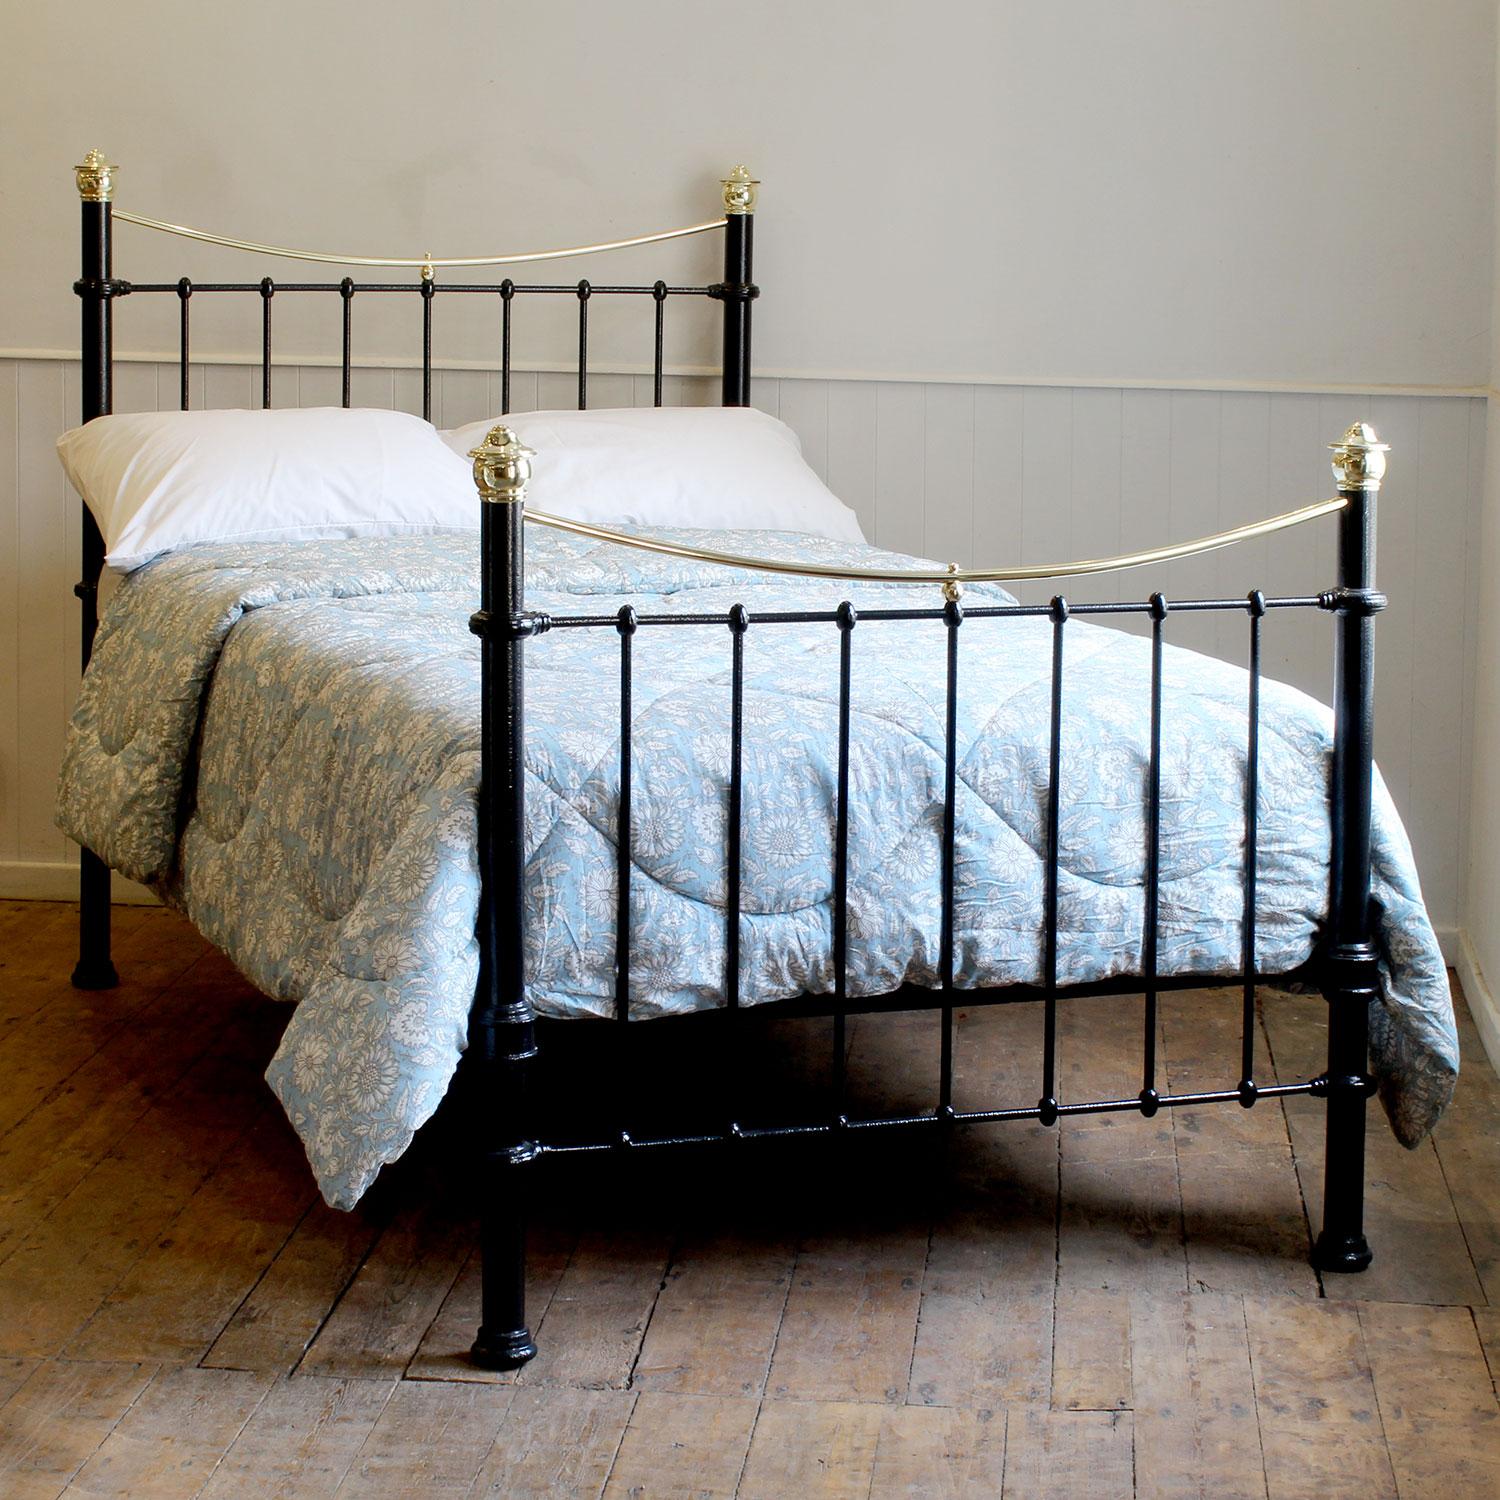 Ein kleines viktorianisches Doppelbettgestell aus Gusseisen und Messing, schwarz lackiert, mit geschwungenen Messinggeländern, Messingkappen und einfachen Gussteilen.

Dieses Bett ist für ein kleines Doppelbett mit einer Breite von 4 Fuß (48 Zoll